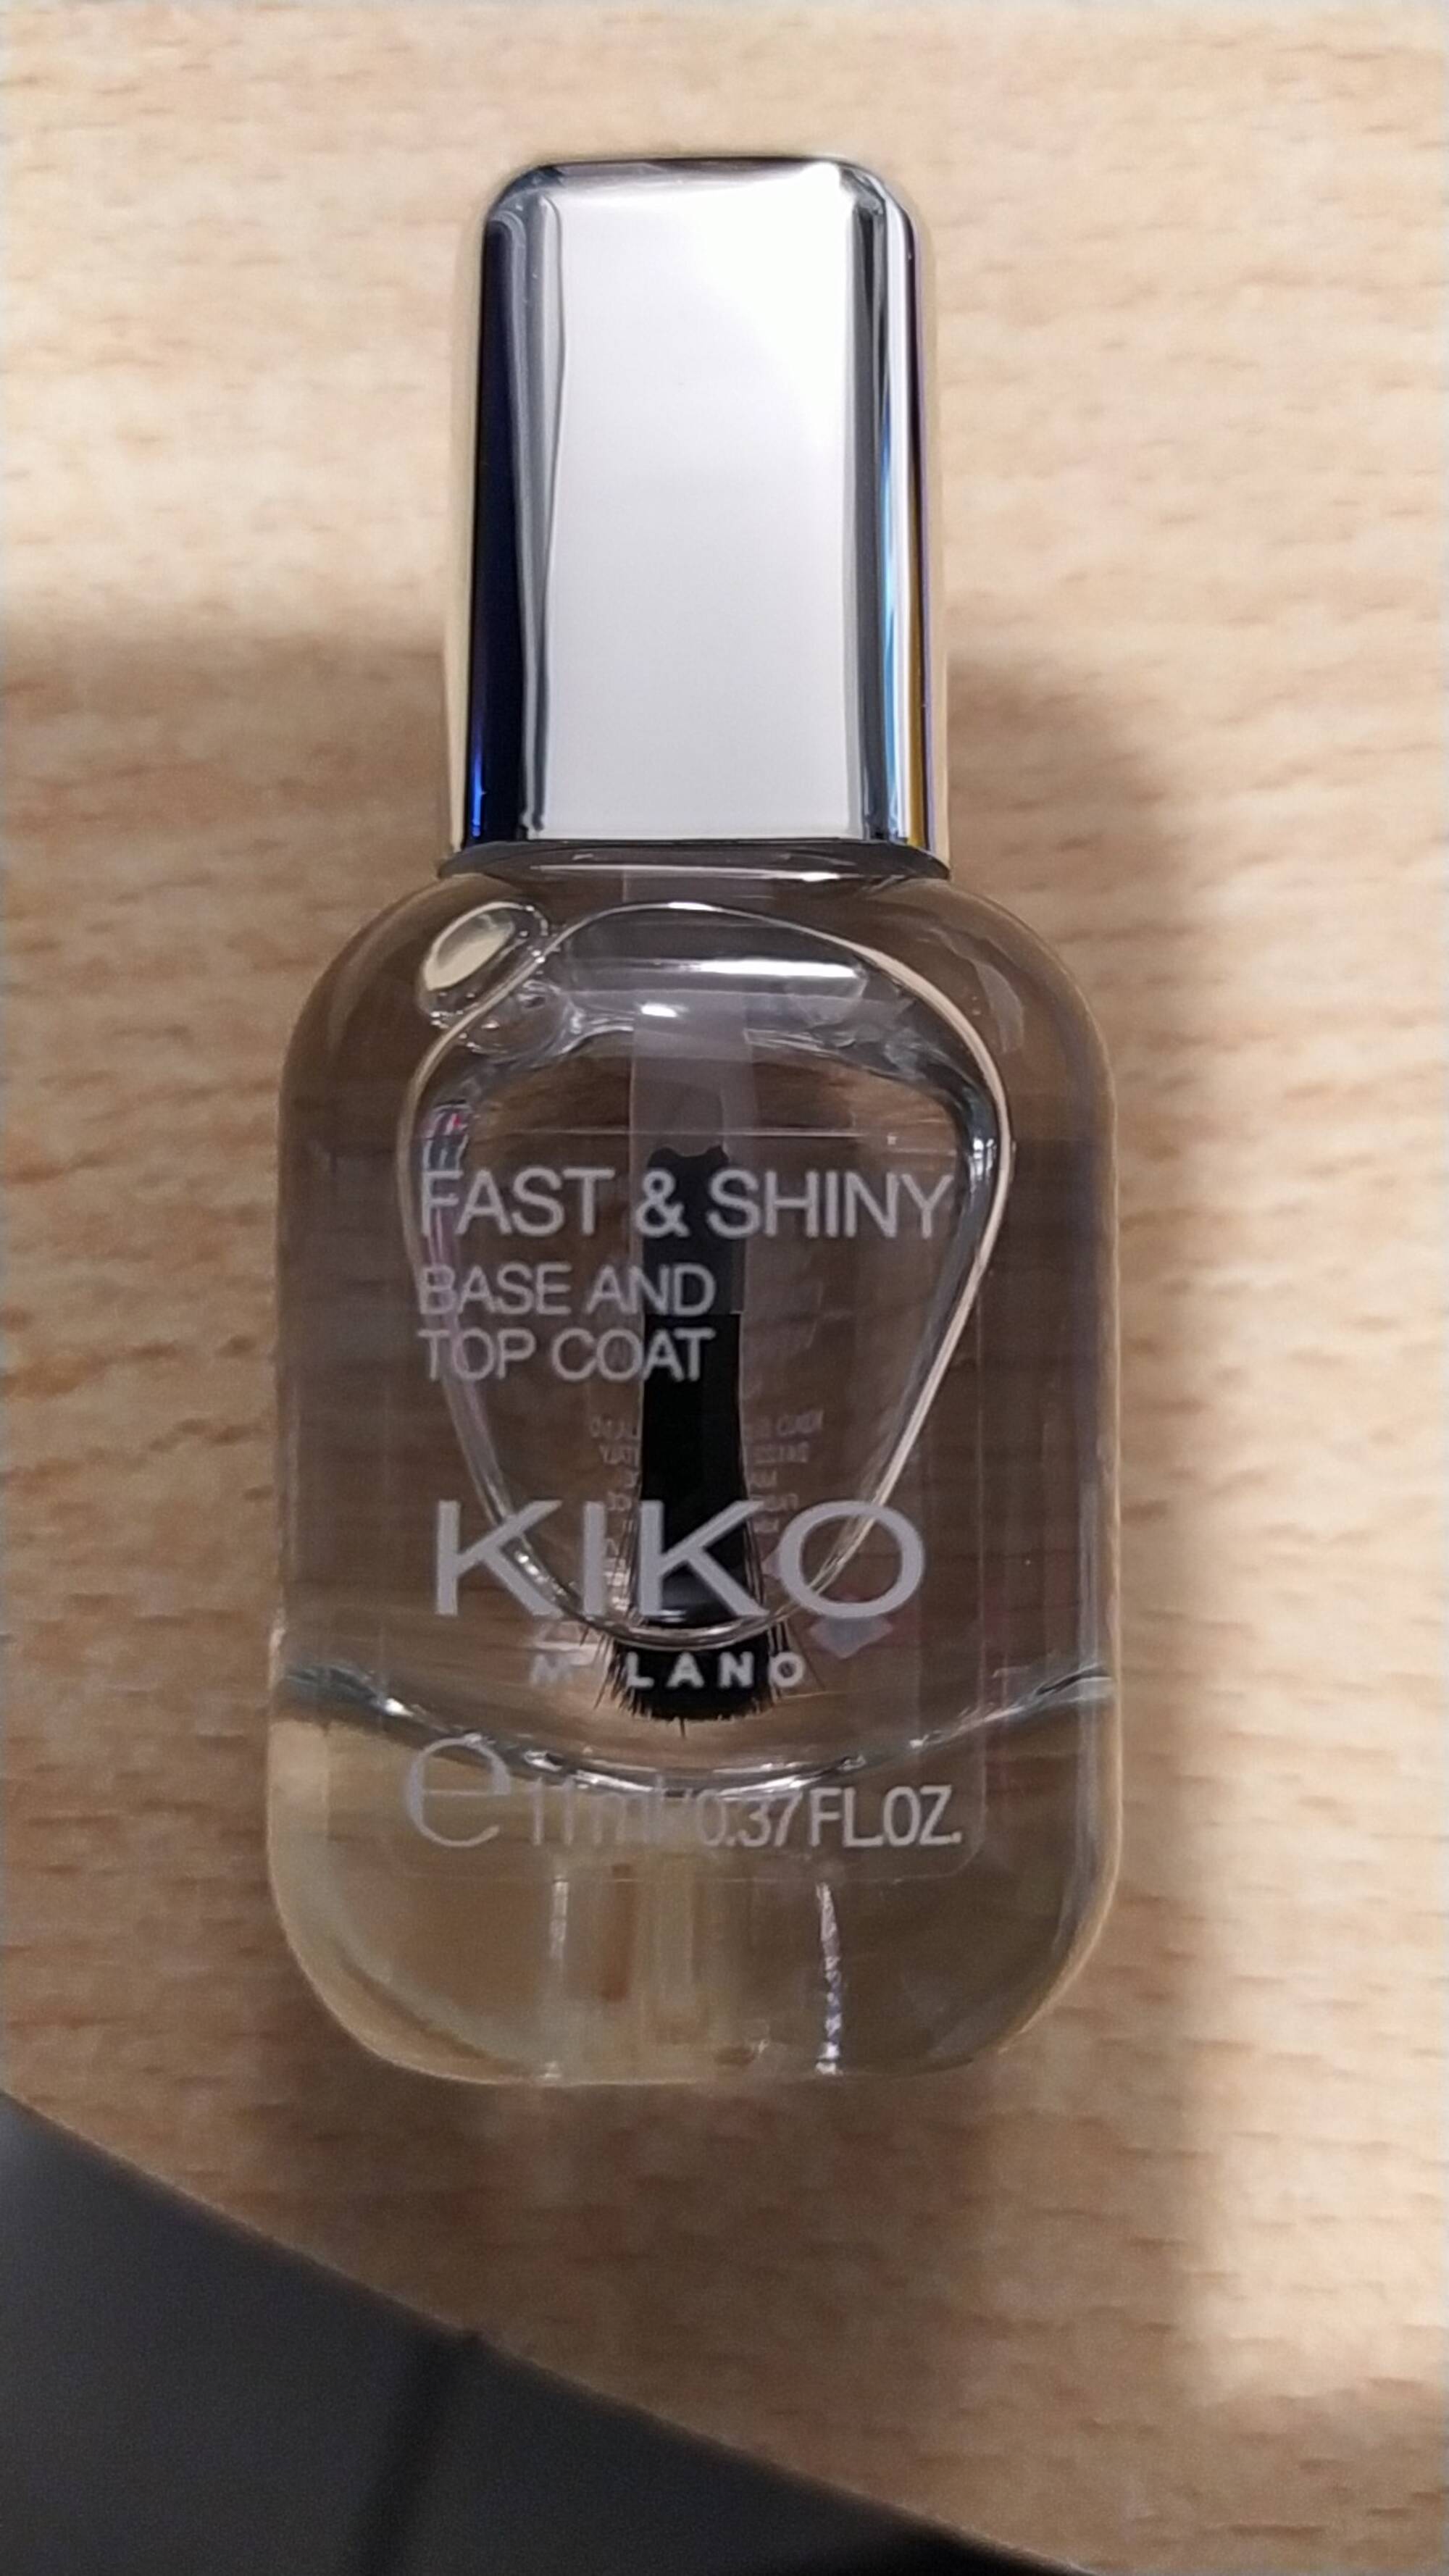 KIKO - Fast & Shiny - Base and Top Coat